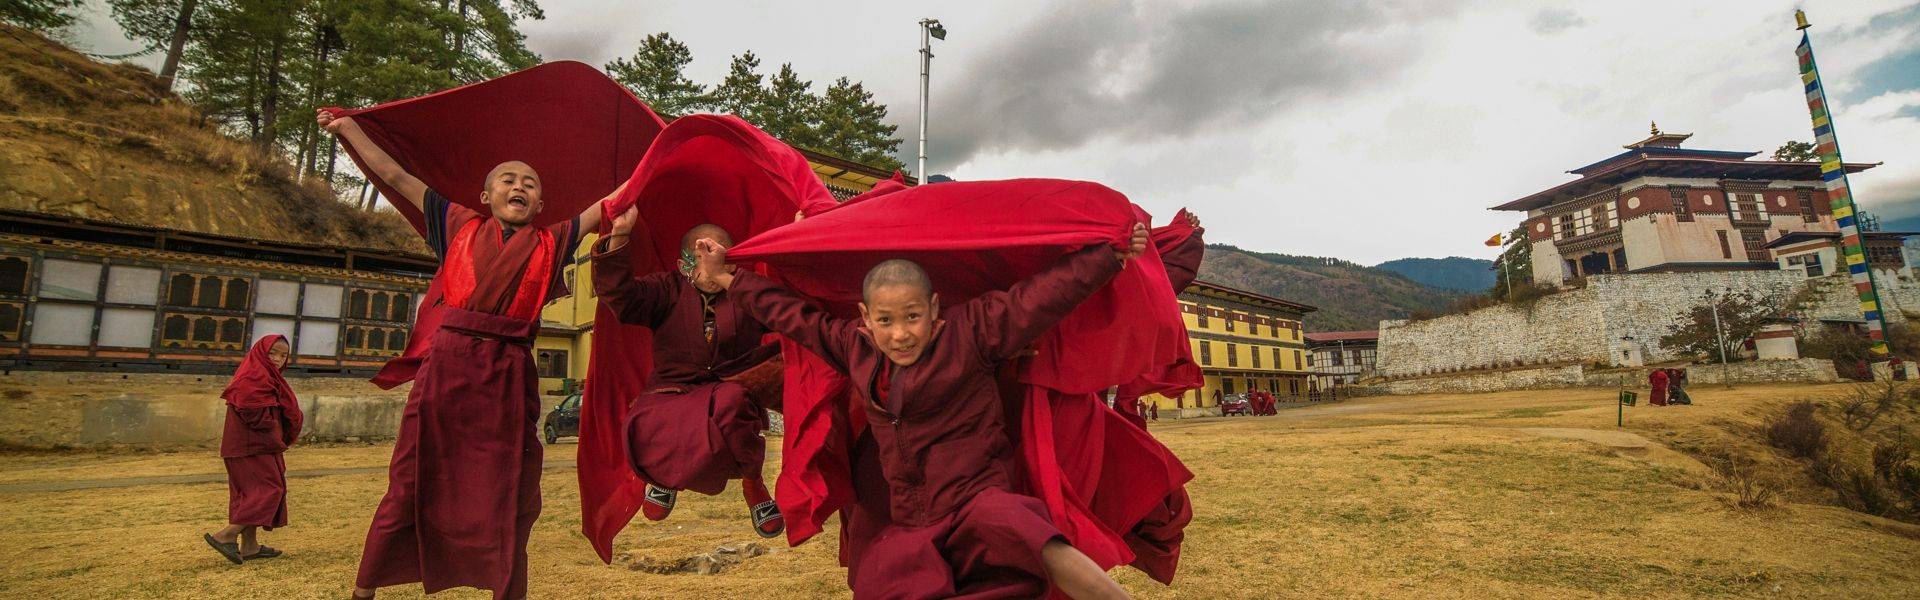 Flying Monks.jpg